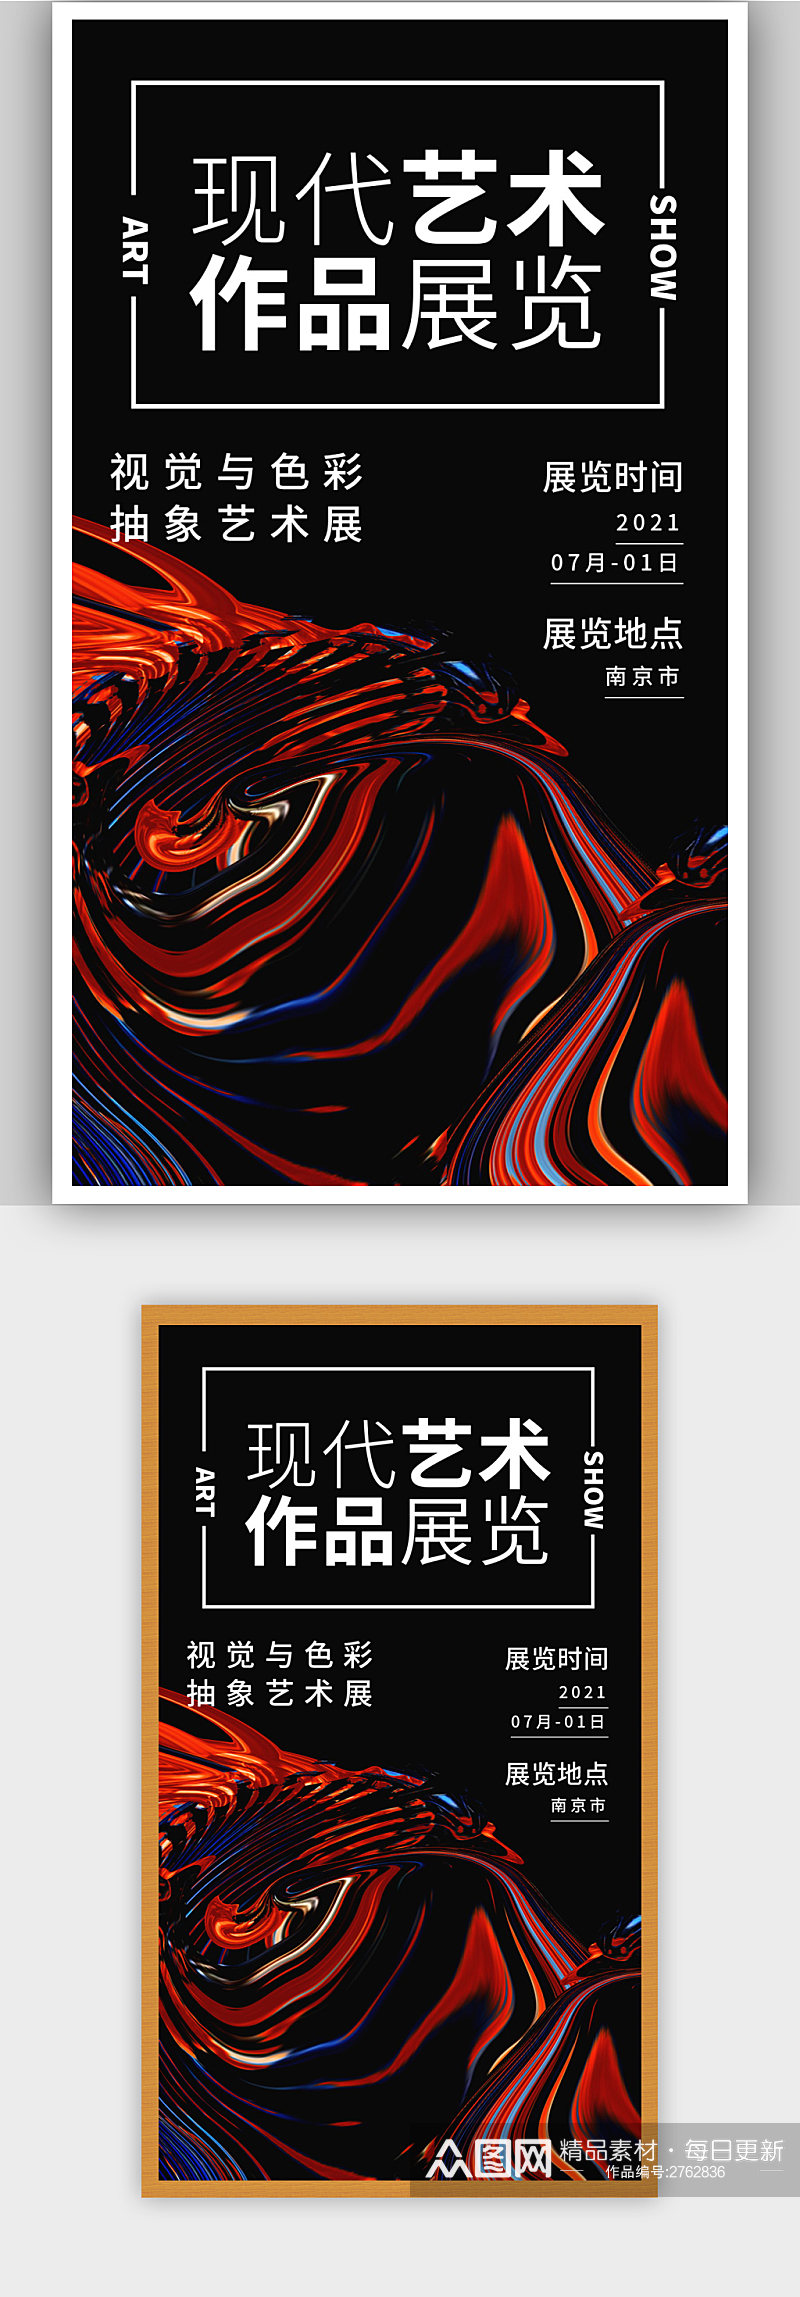 炫彩黑色艺术作品展览宣传海报素材